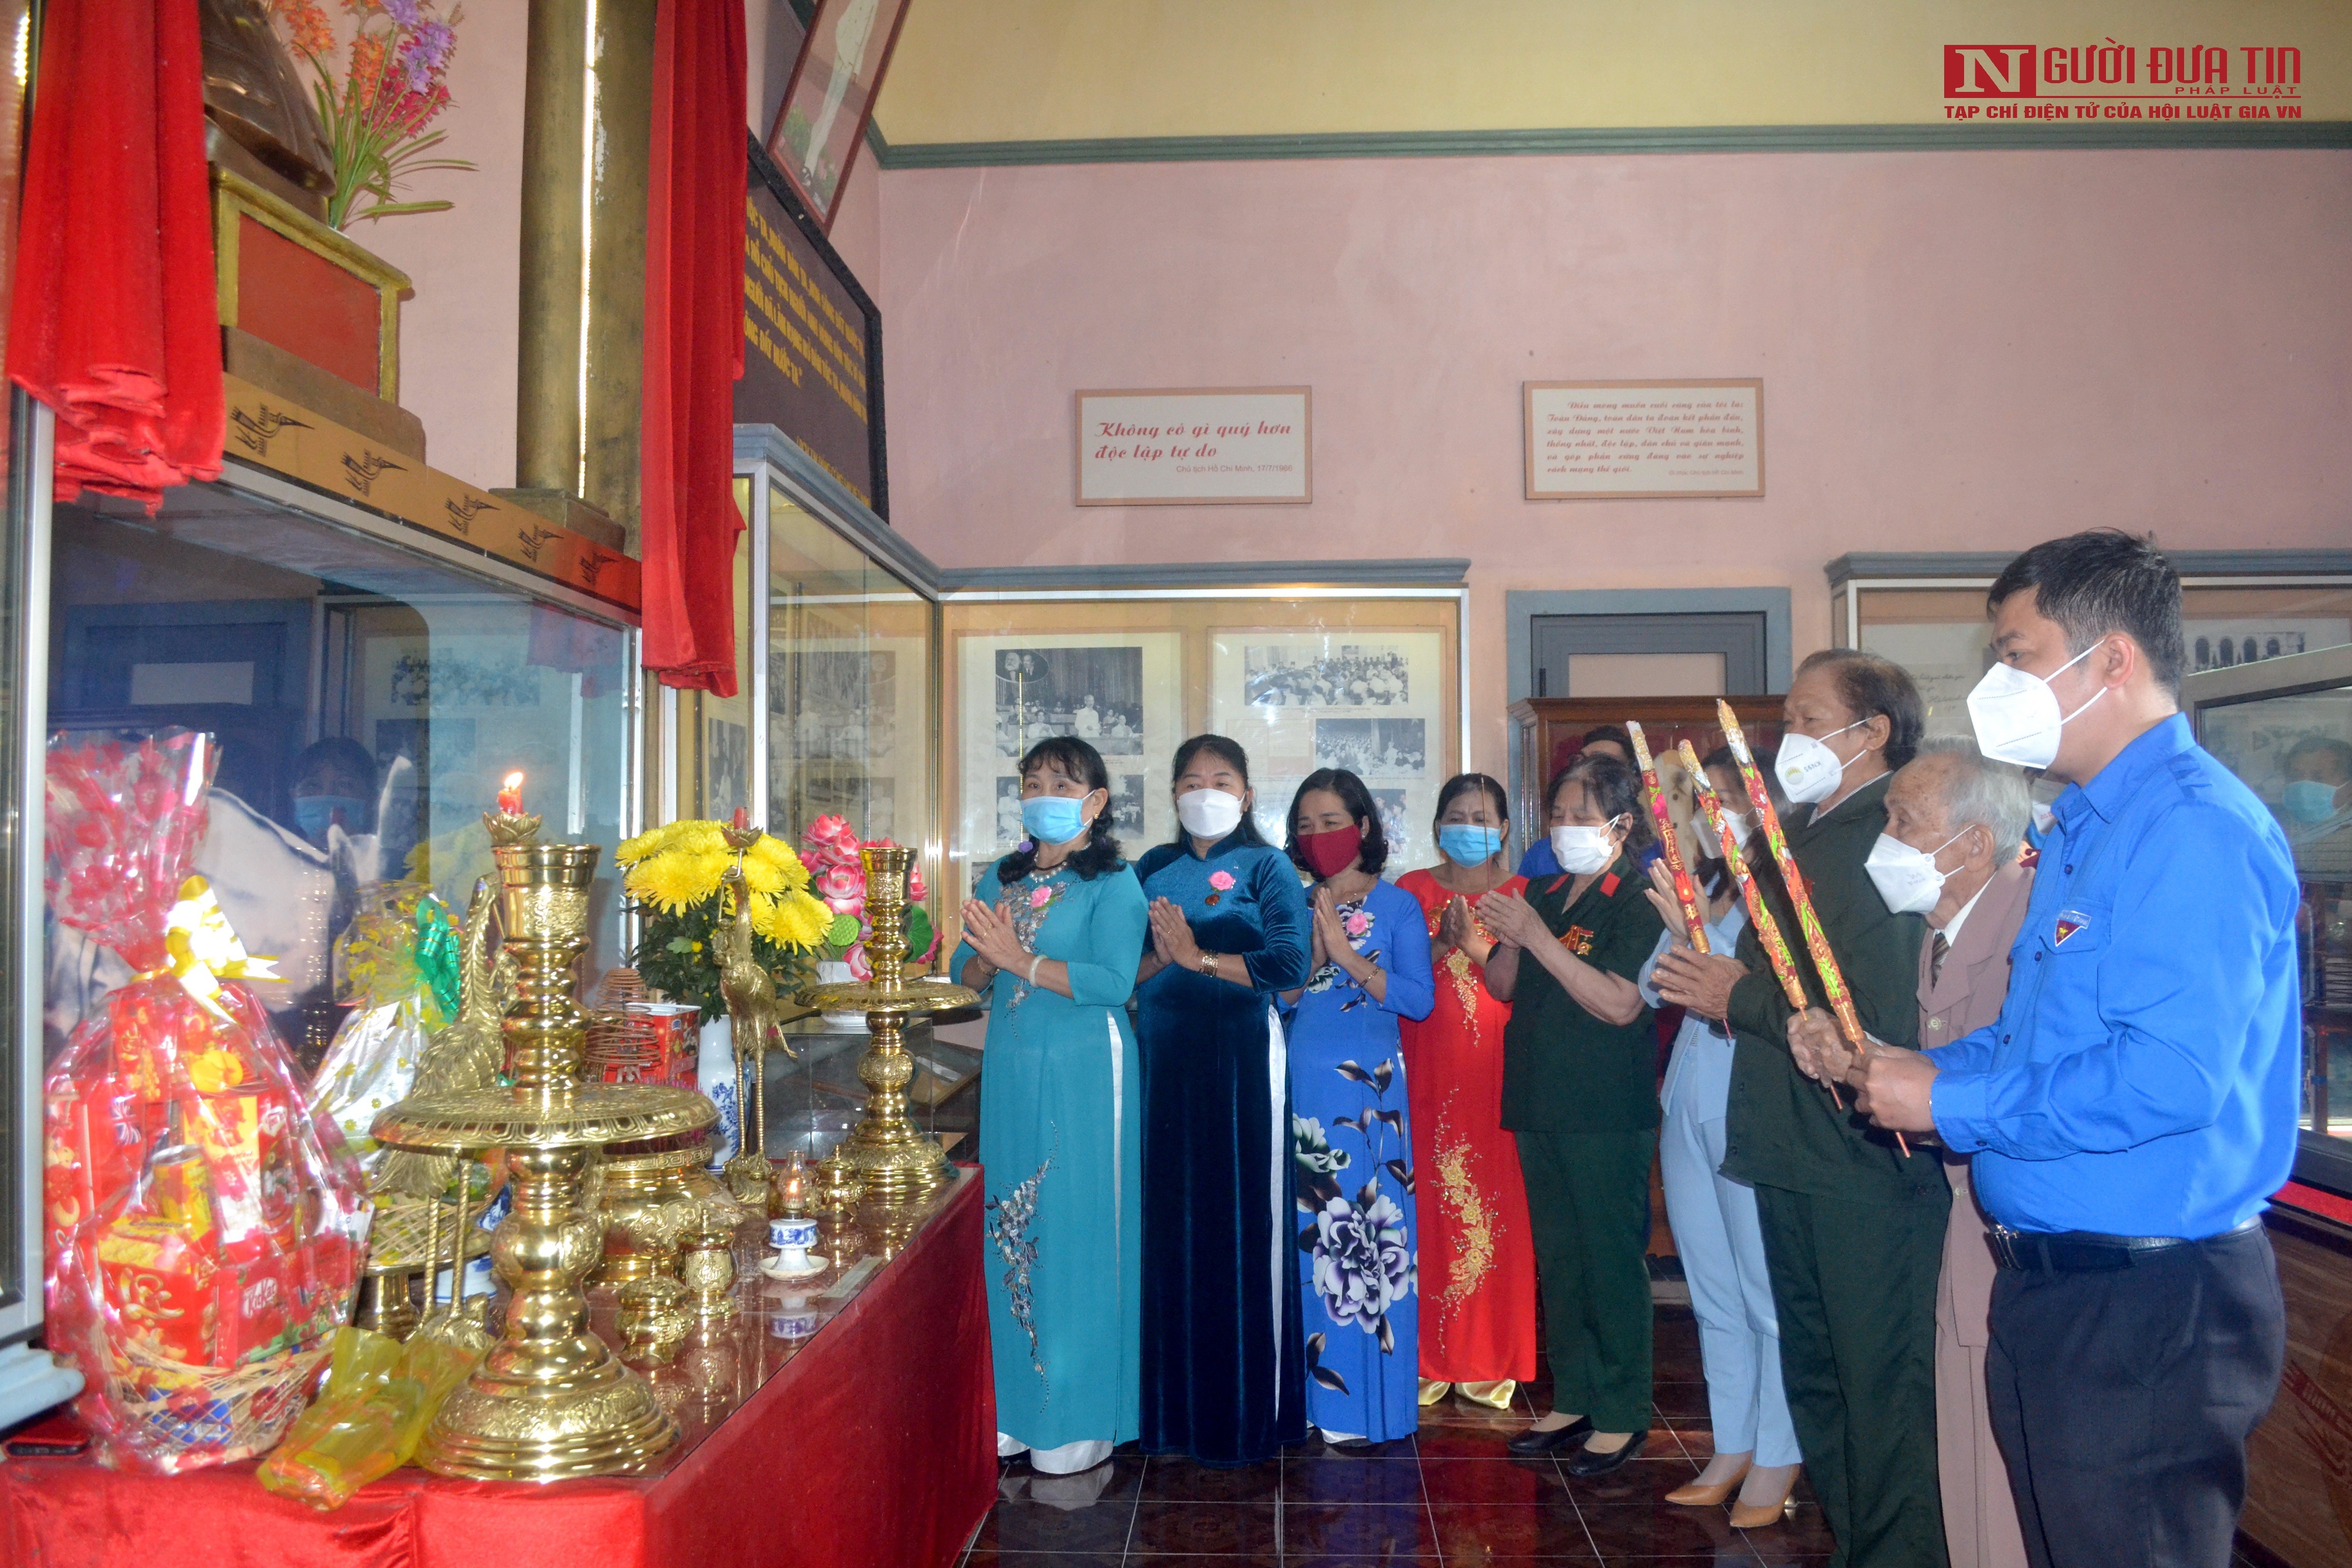 Văn hoá - Đến thăm “Bảo tàng Hồ Chí Minh thu nhỏ” giữa lòng phố biển Nha Trang (Hình 9).